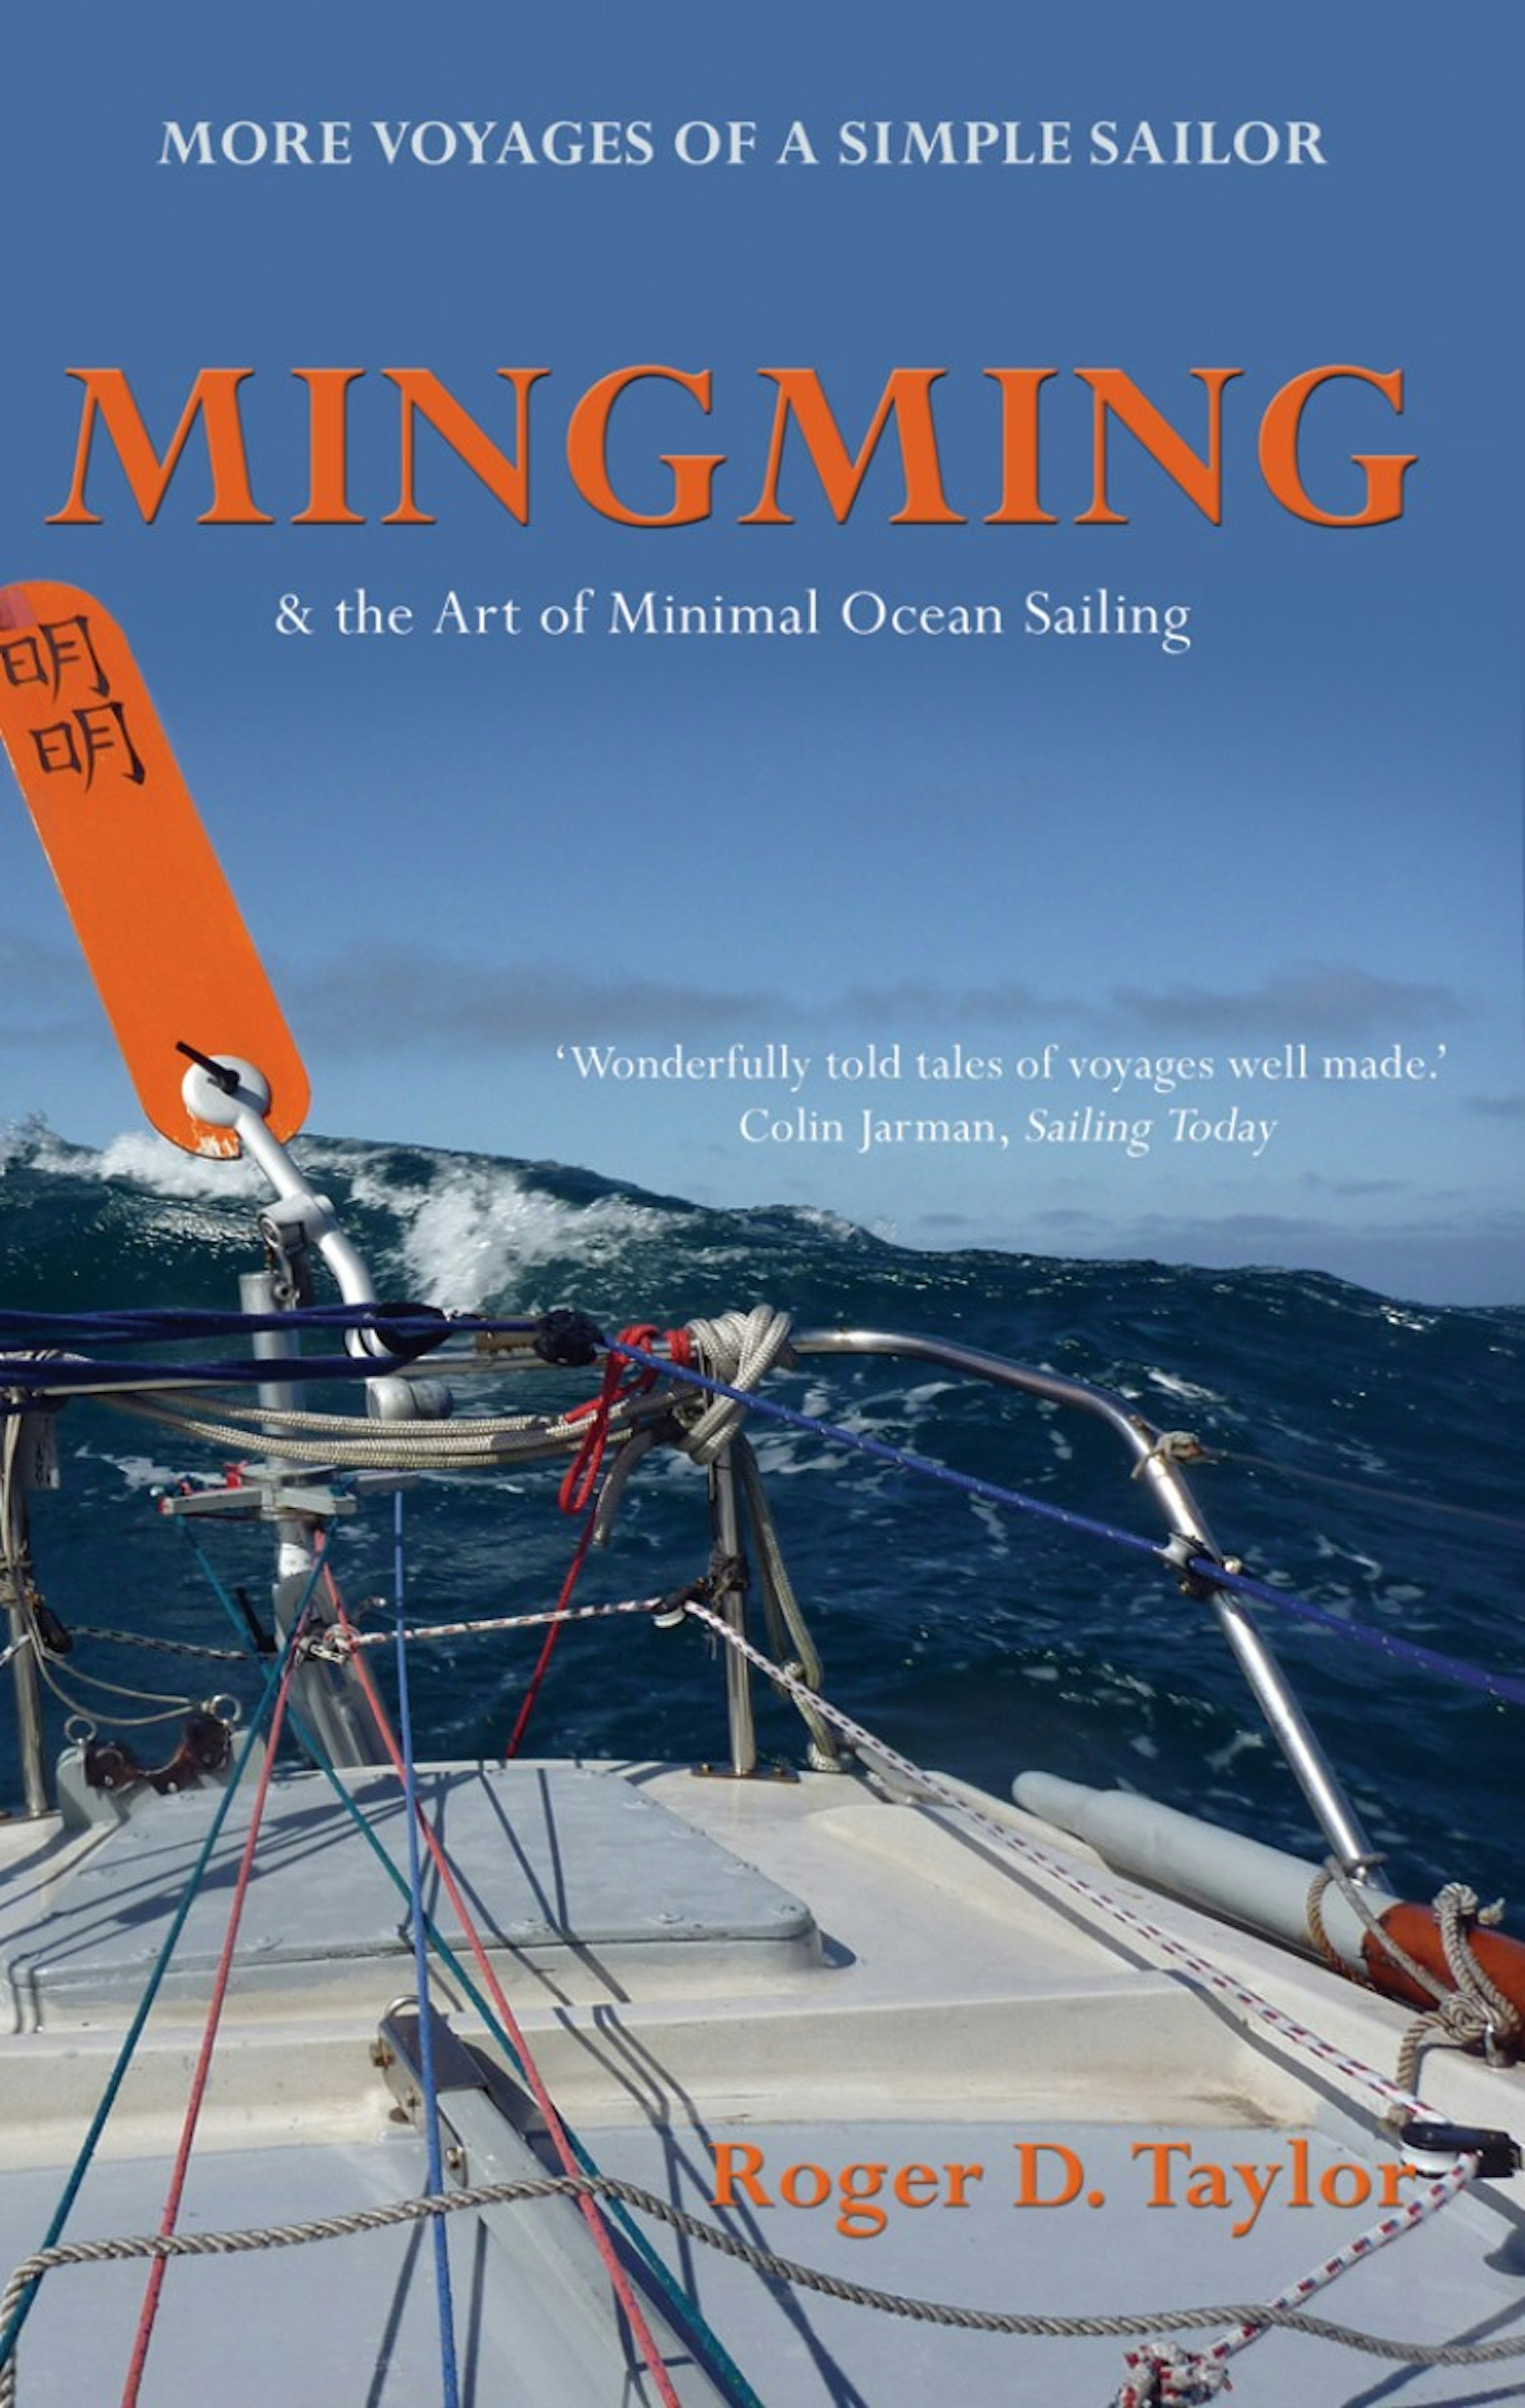 Mingming & the Art of Minimal Ocean Sailing